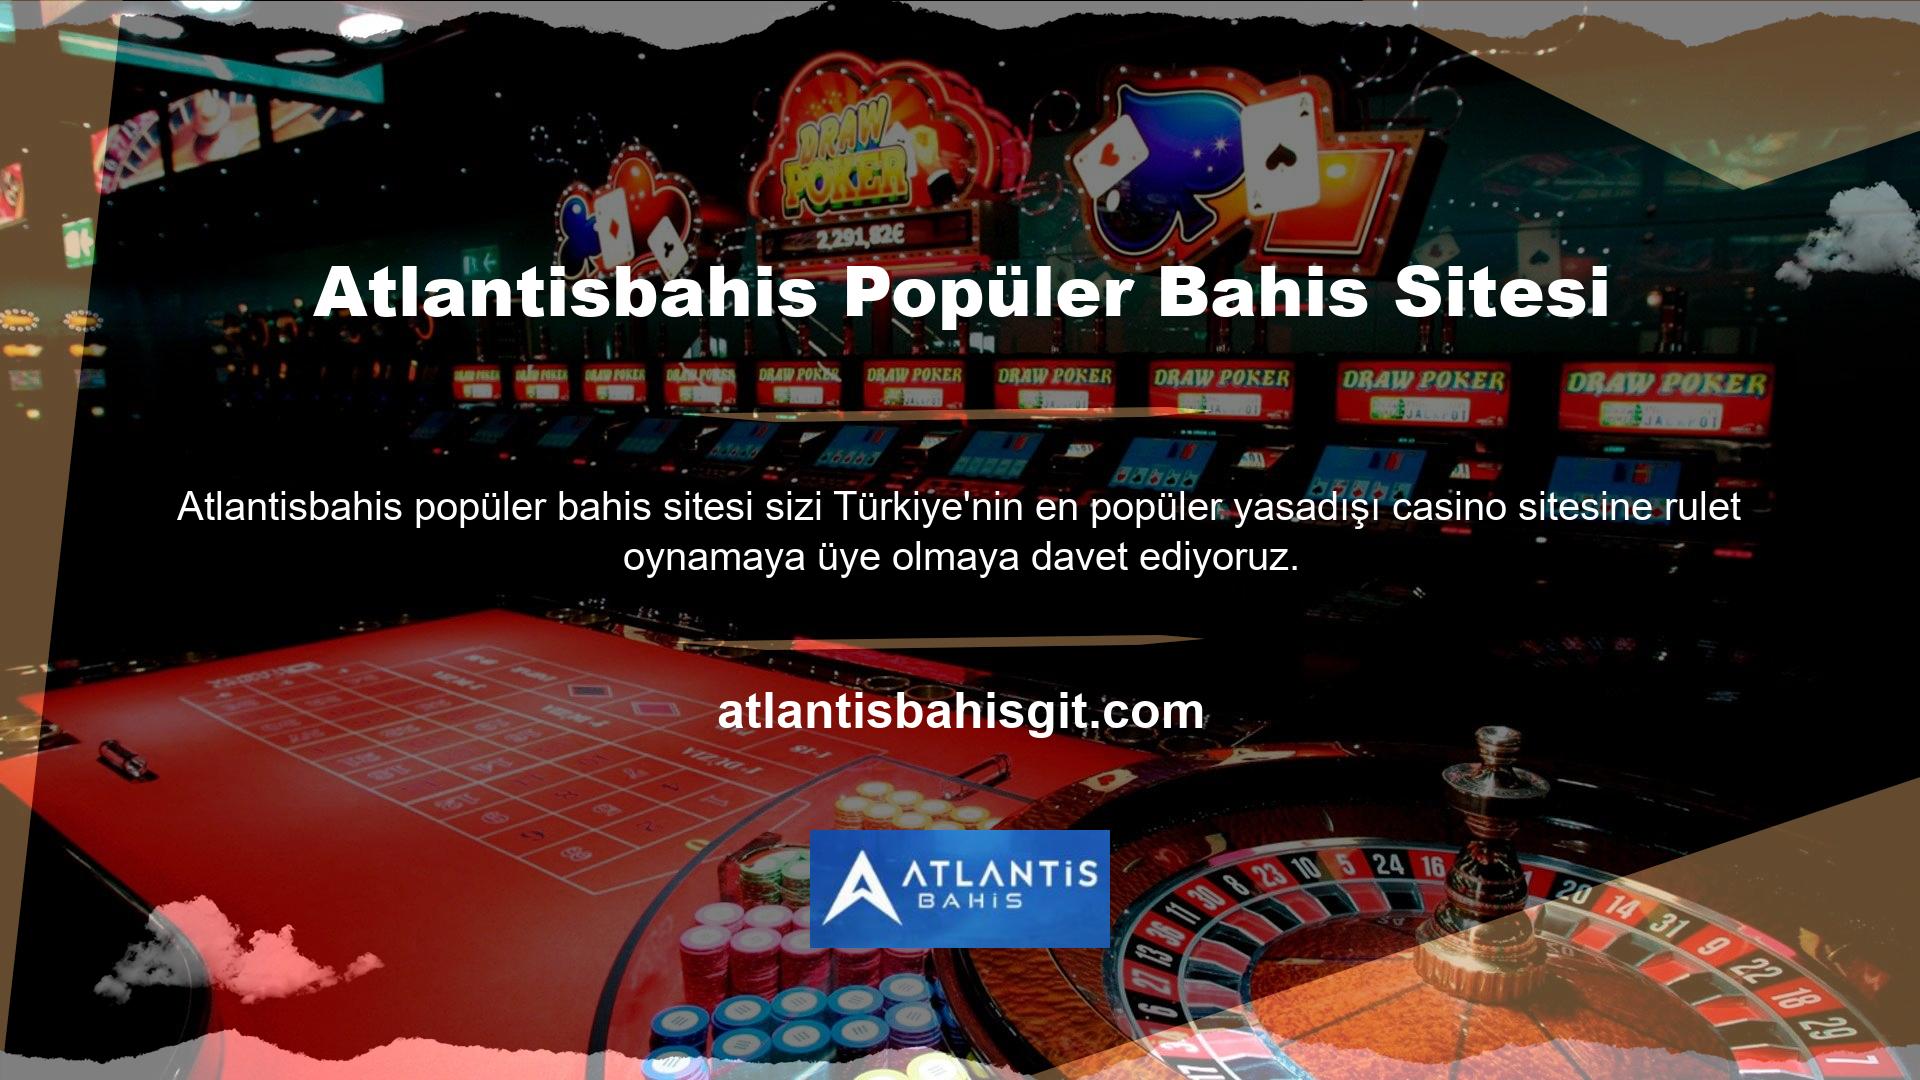 Atlantisbahis Casino'da oynayarak çok para kazanabilirsiniz